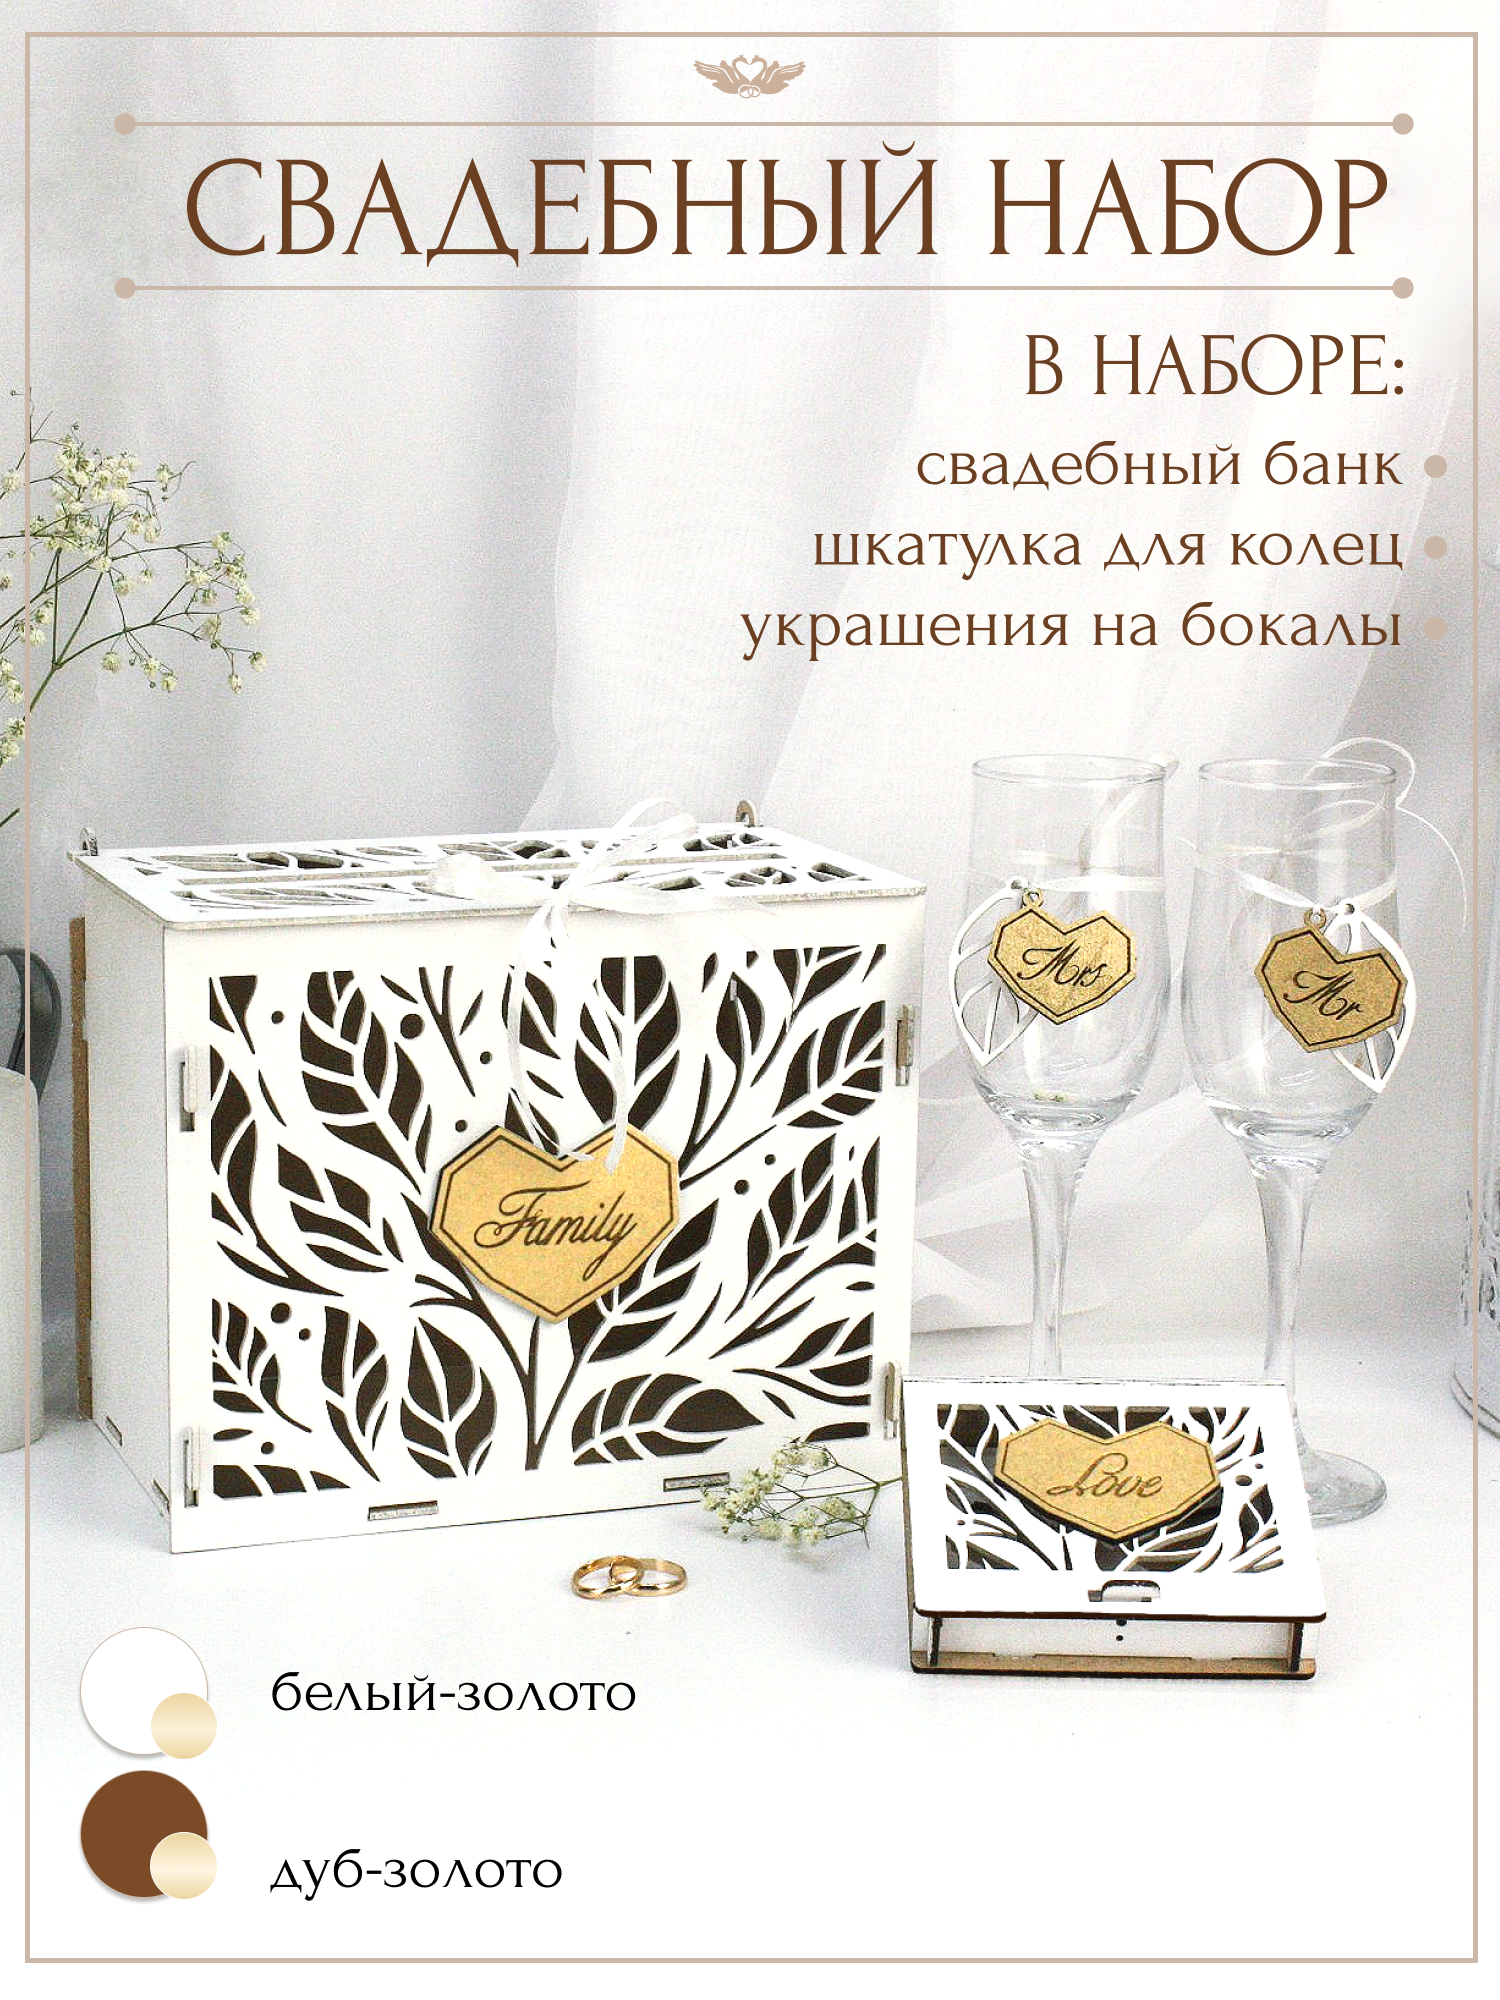 Свадебный набор из дерева "Family" белый: коробка для денег семейный банк, шкатулка для колец, украшения на бокалы. "ТМ Канышевы"